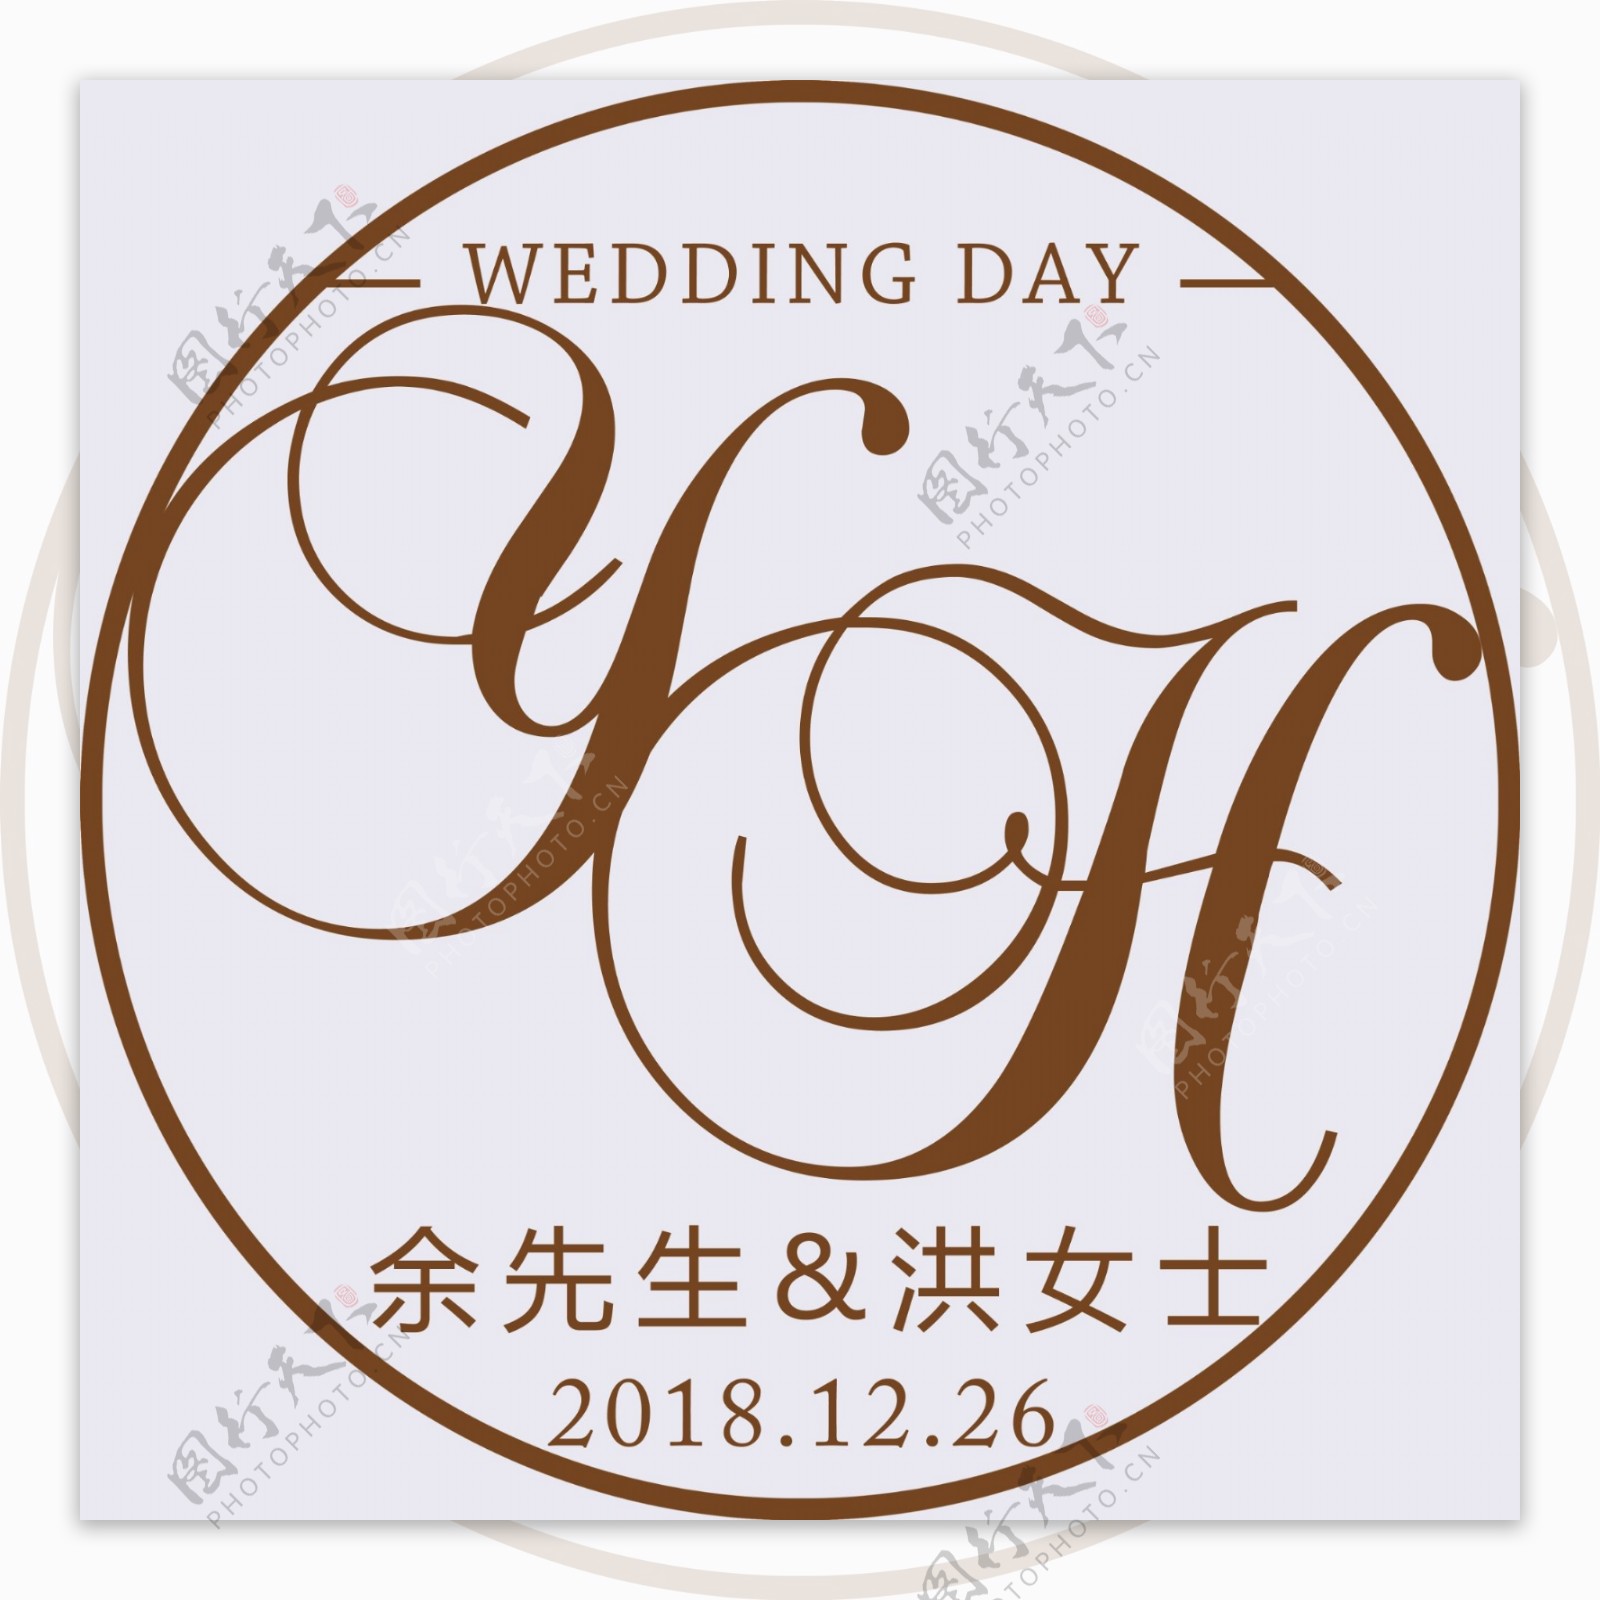 五五婚礼Logo